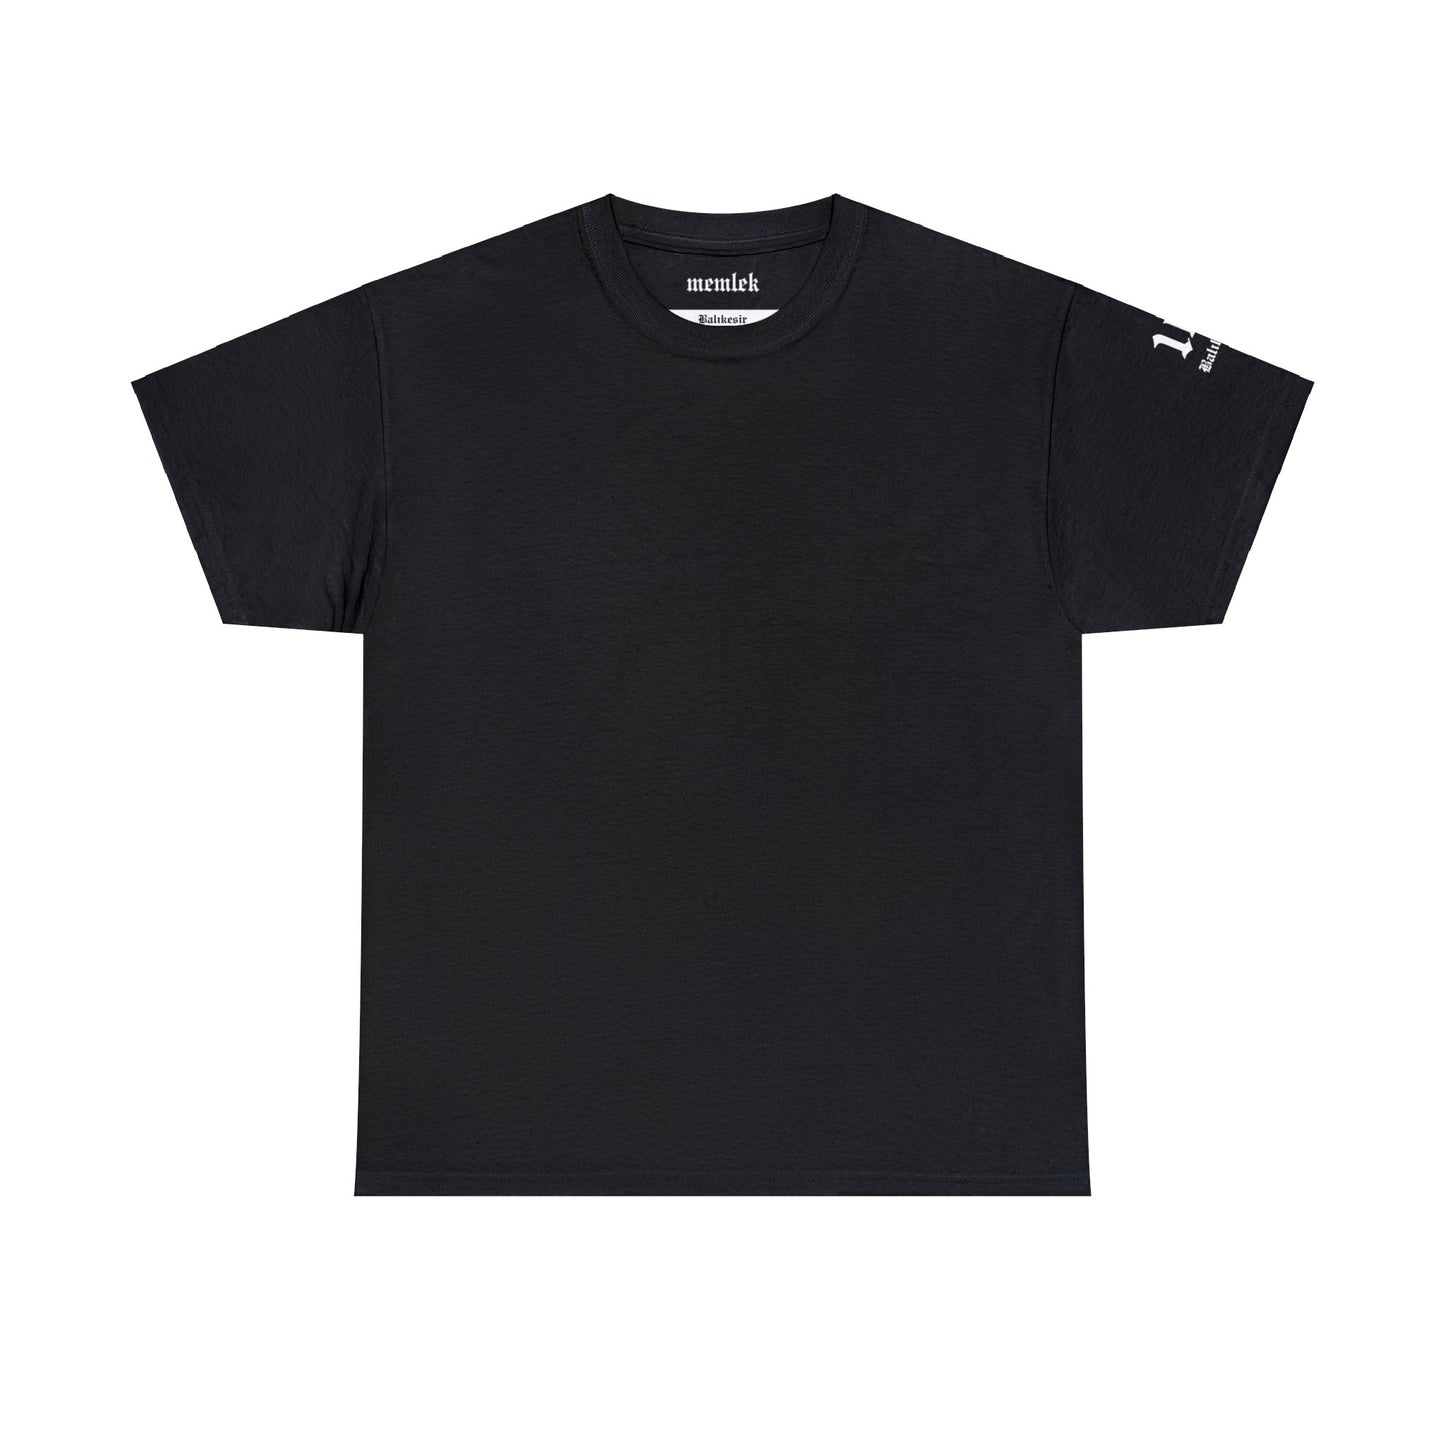 Şehirim - 10 Balıkesir - T-Shirt - Back Print - Black